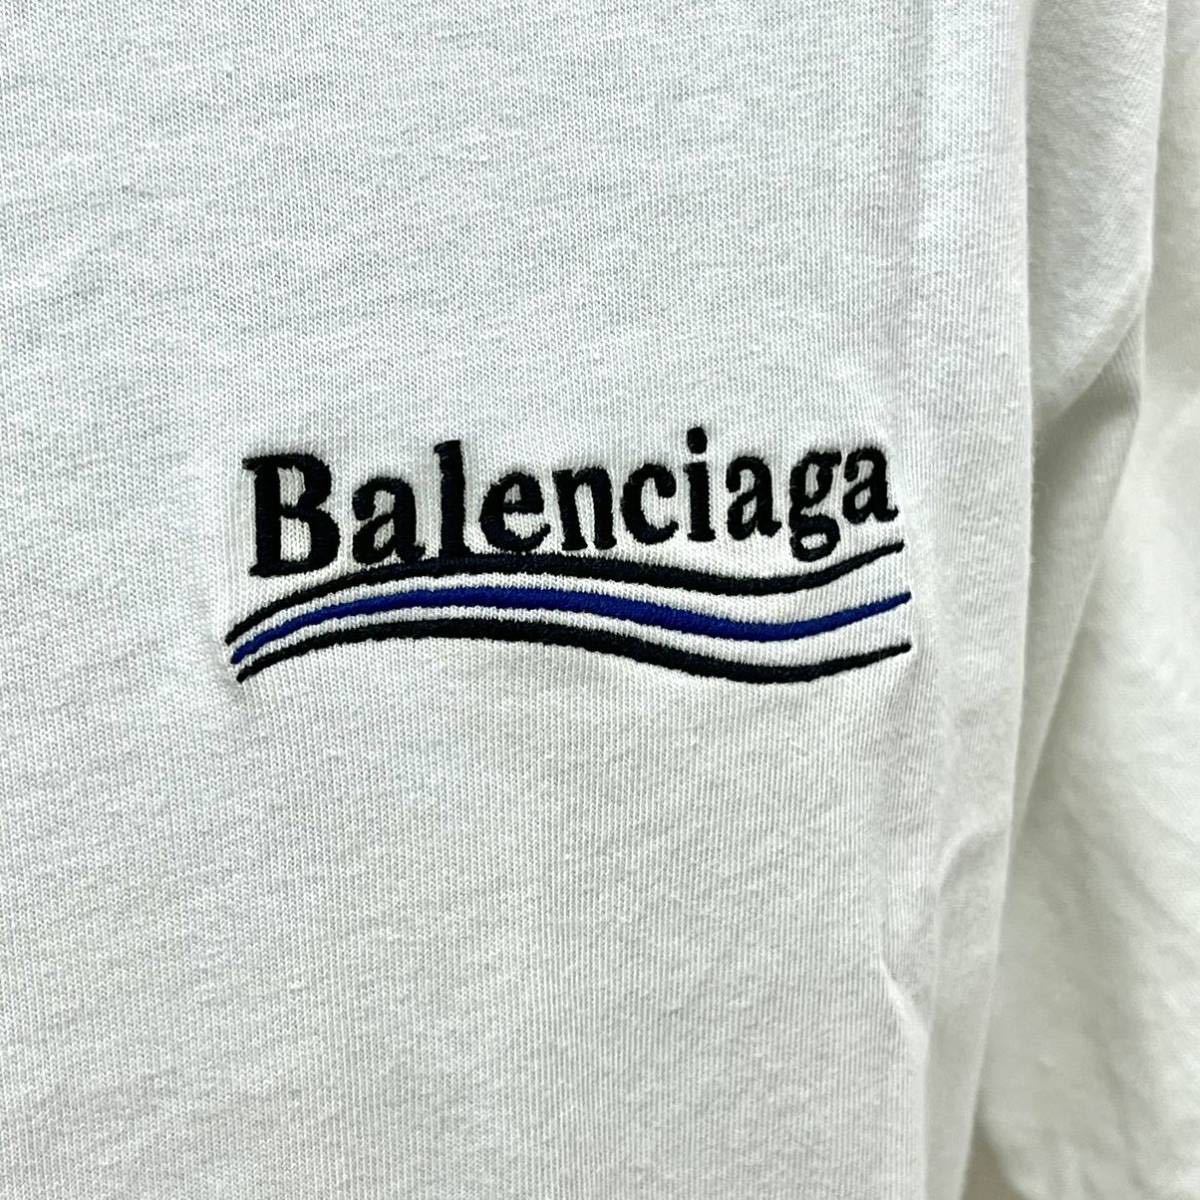 BALENCIAGA バレンシアガ キャンペーンロゴ刺繍 ラージフィット 半袖 Tシャツ ユニセックス 641655 TKVJ1 9084